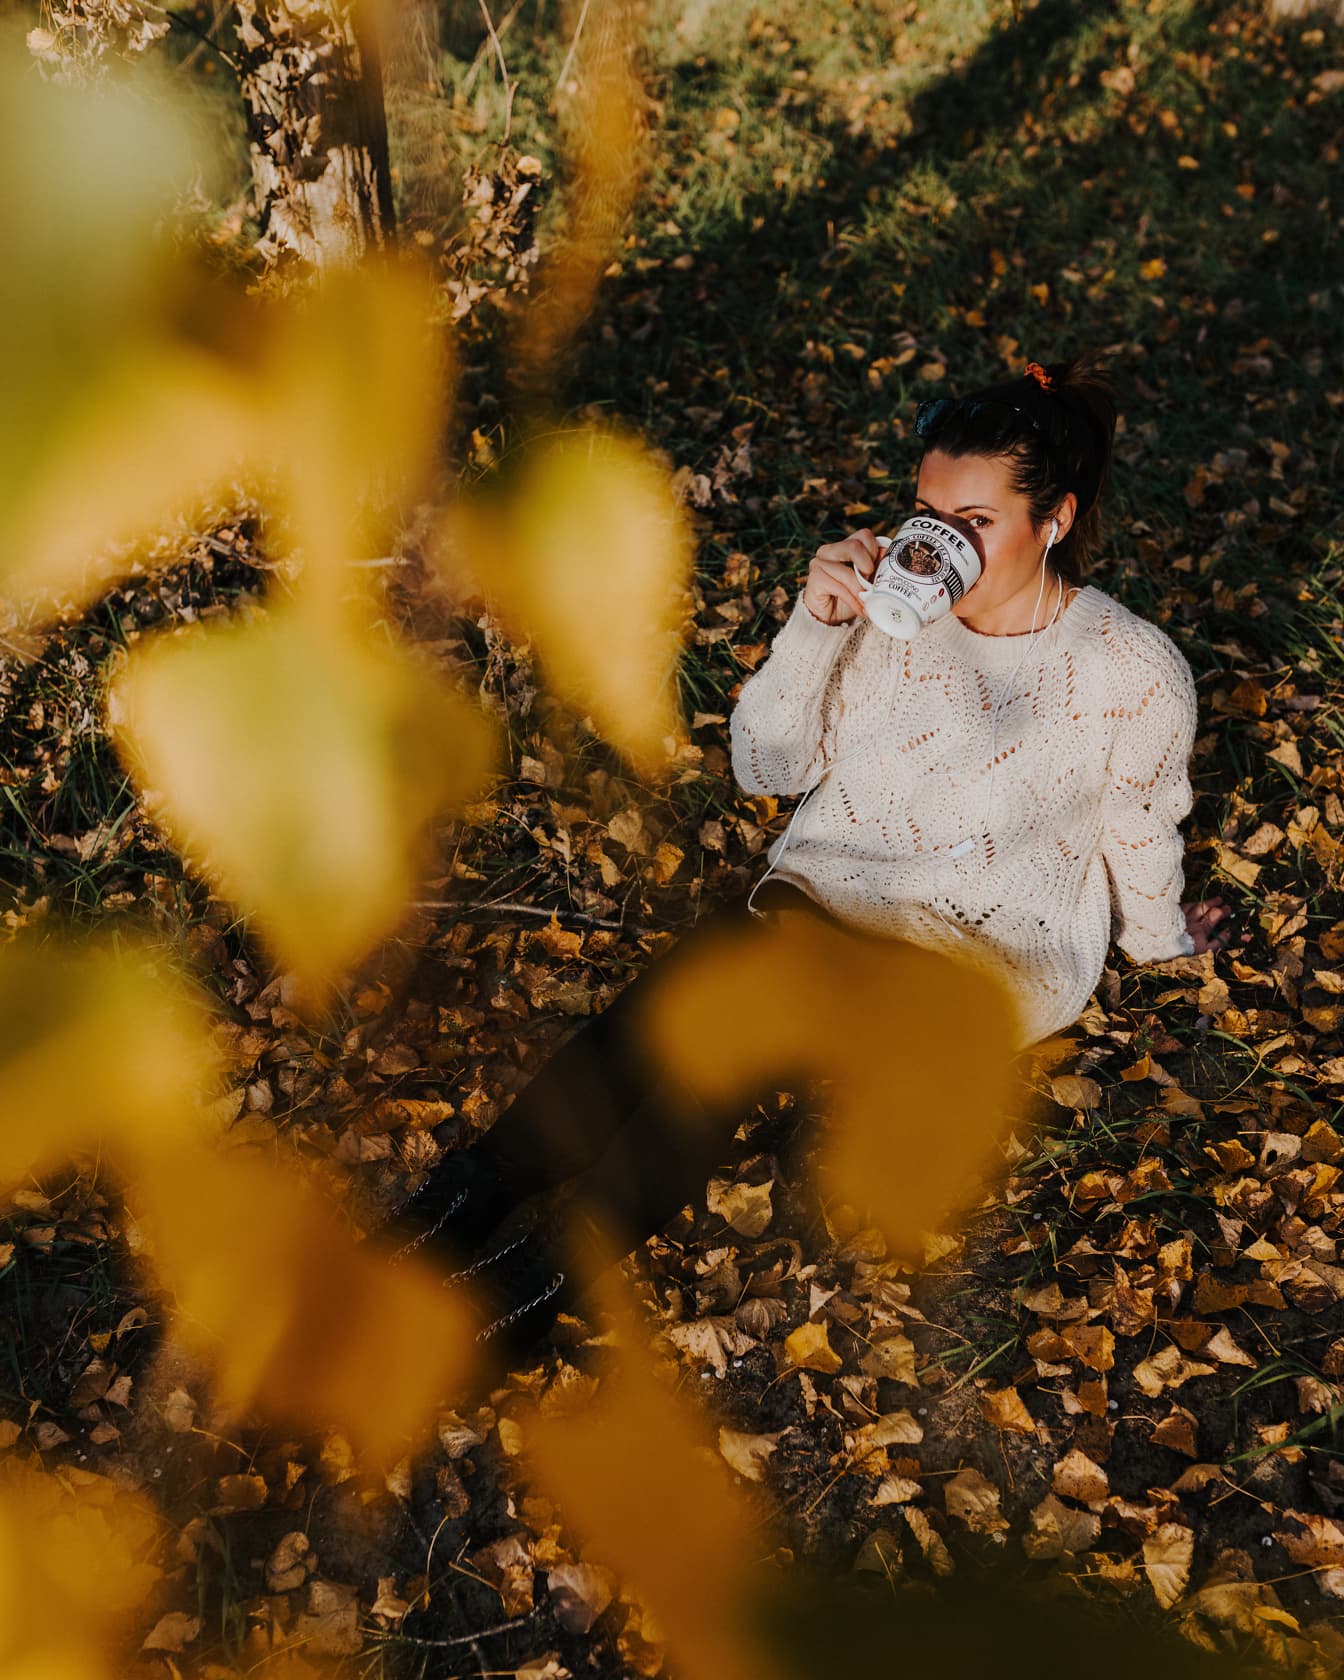 Женщина в шерстяном свитере ручной работы сидит на земле и пьет из большой кофейной кружки